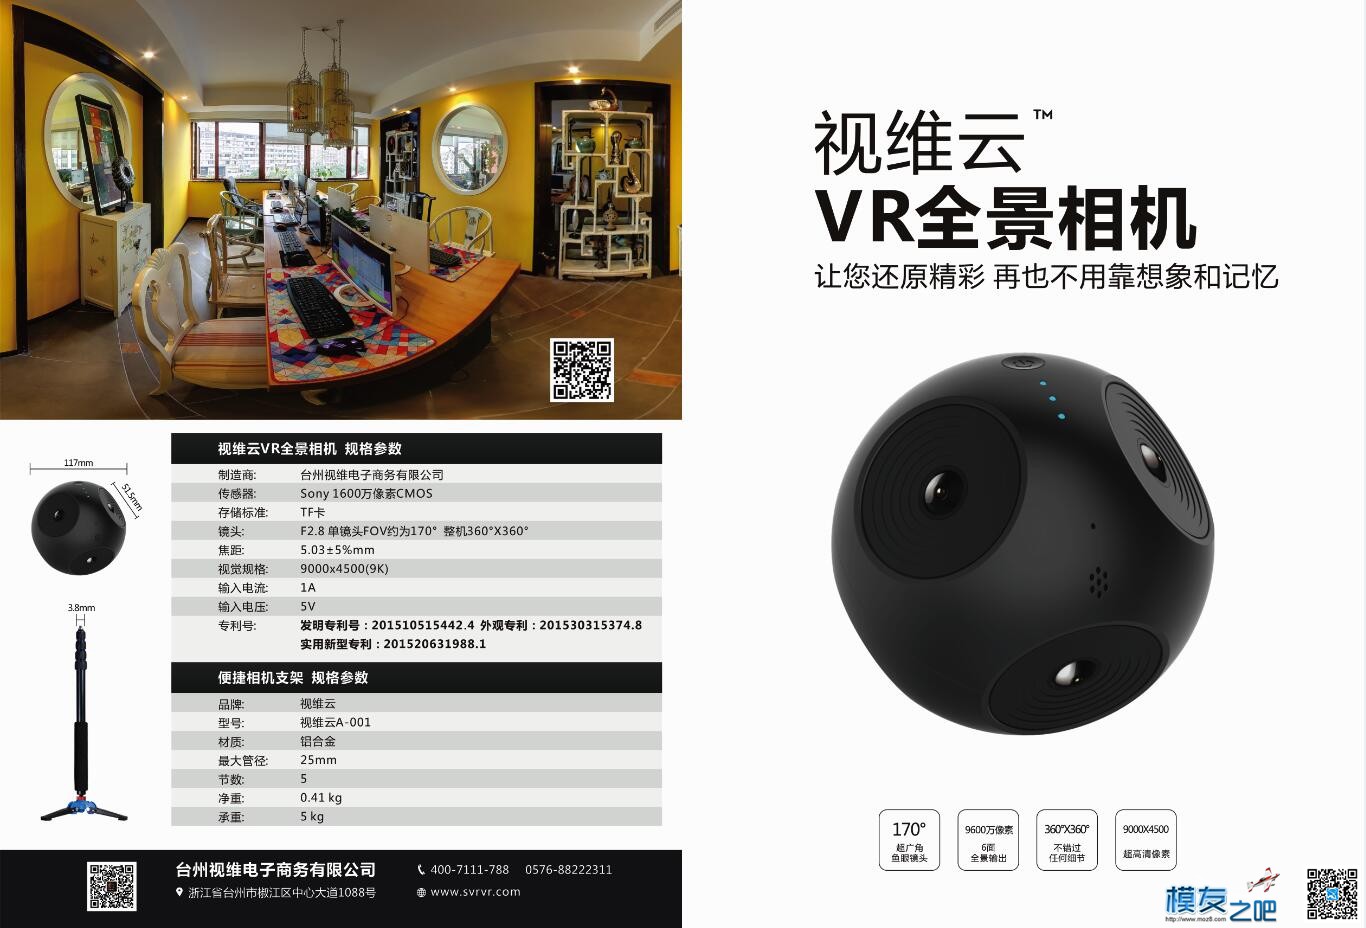 发现个实用的VR相机推荐给大家 相机 作者:AIbluecapf 4534 